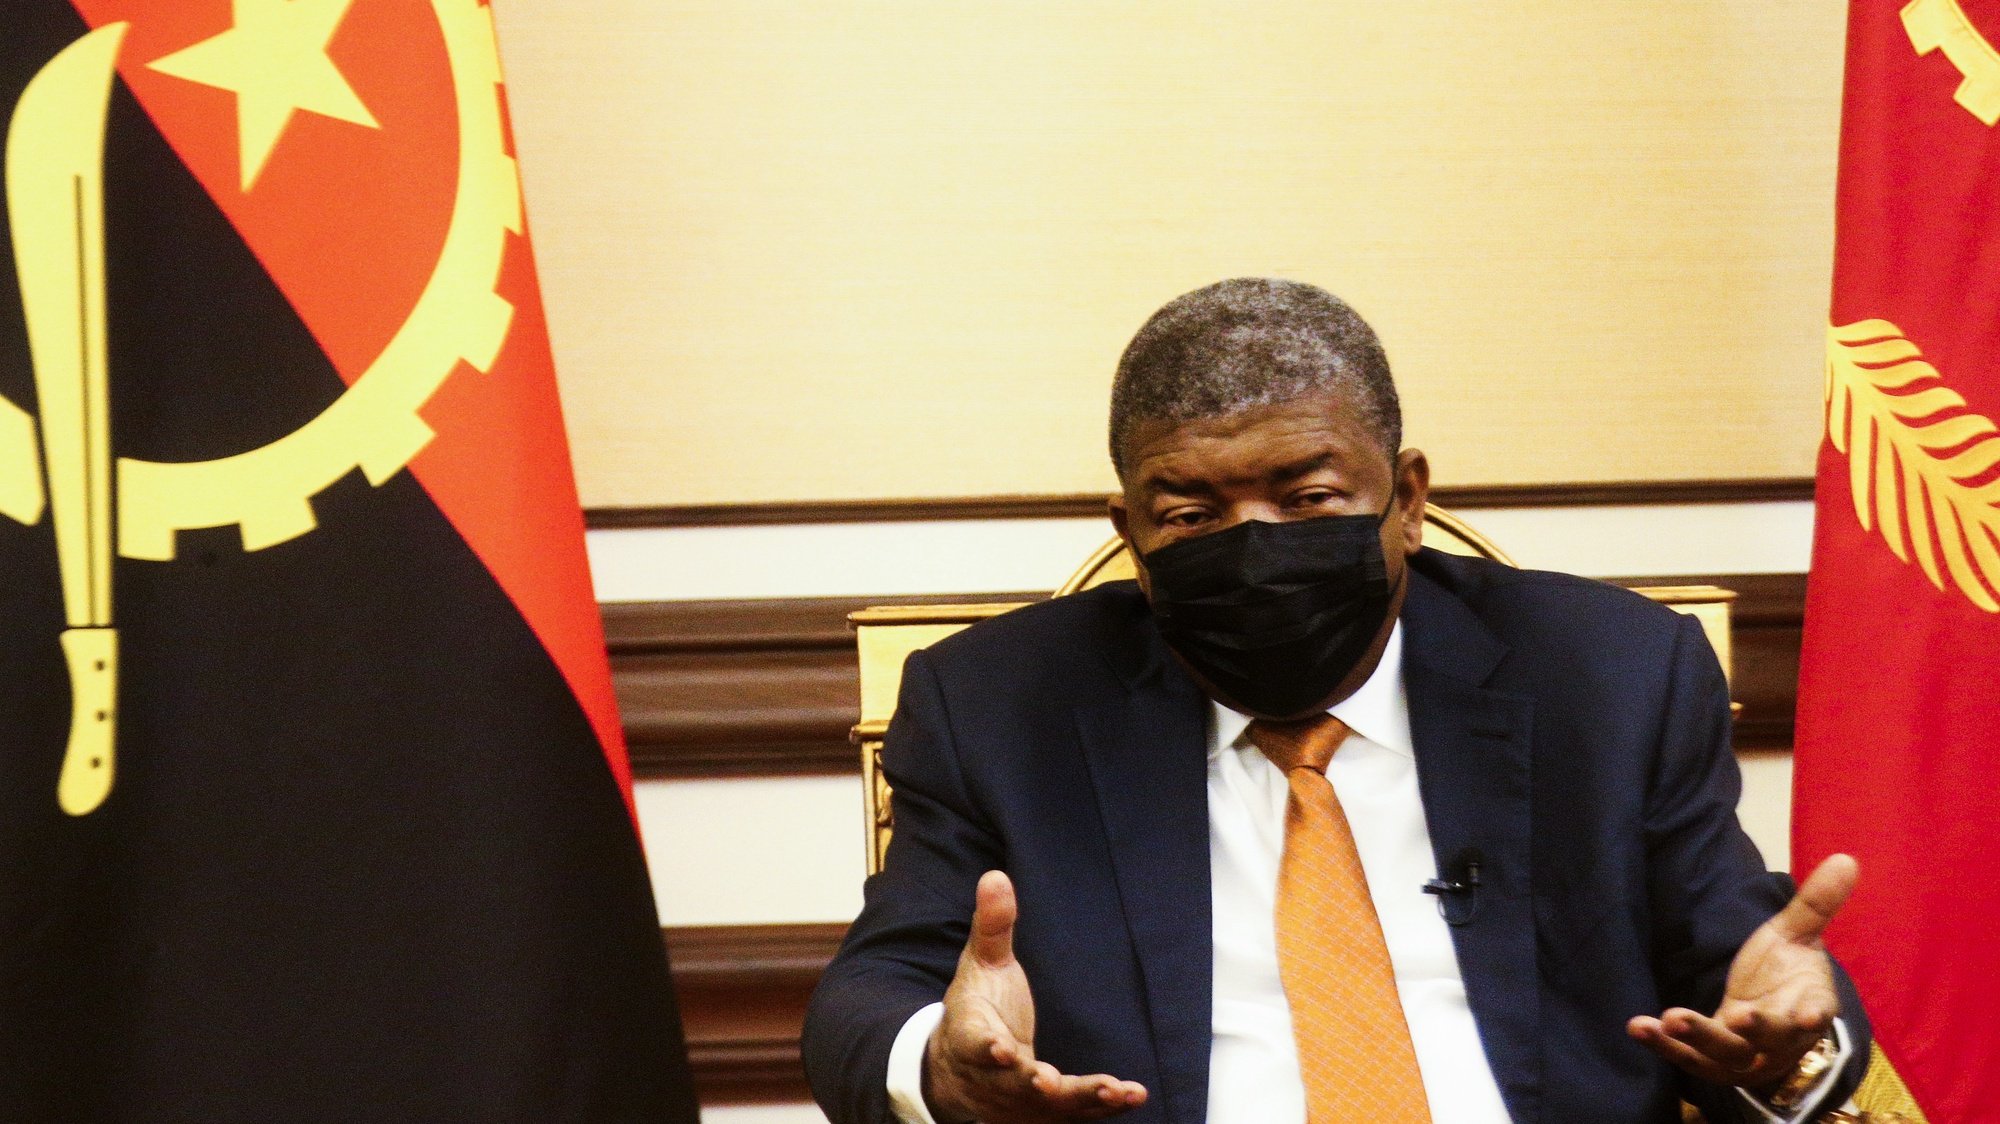 O Presidente da República de Angola, João Lourenço, fala durante uma entrevista